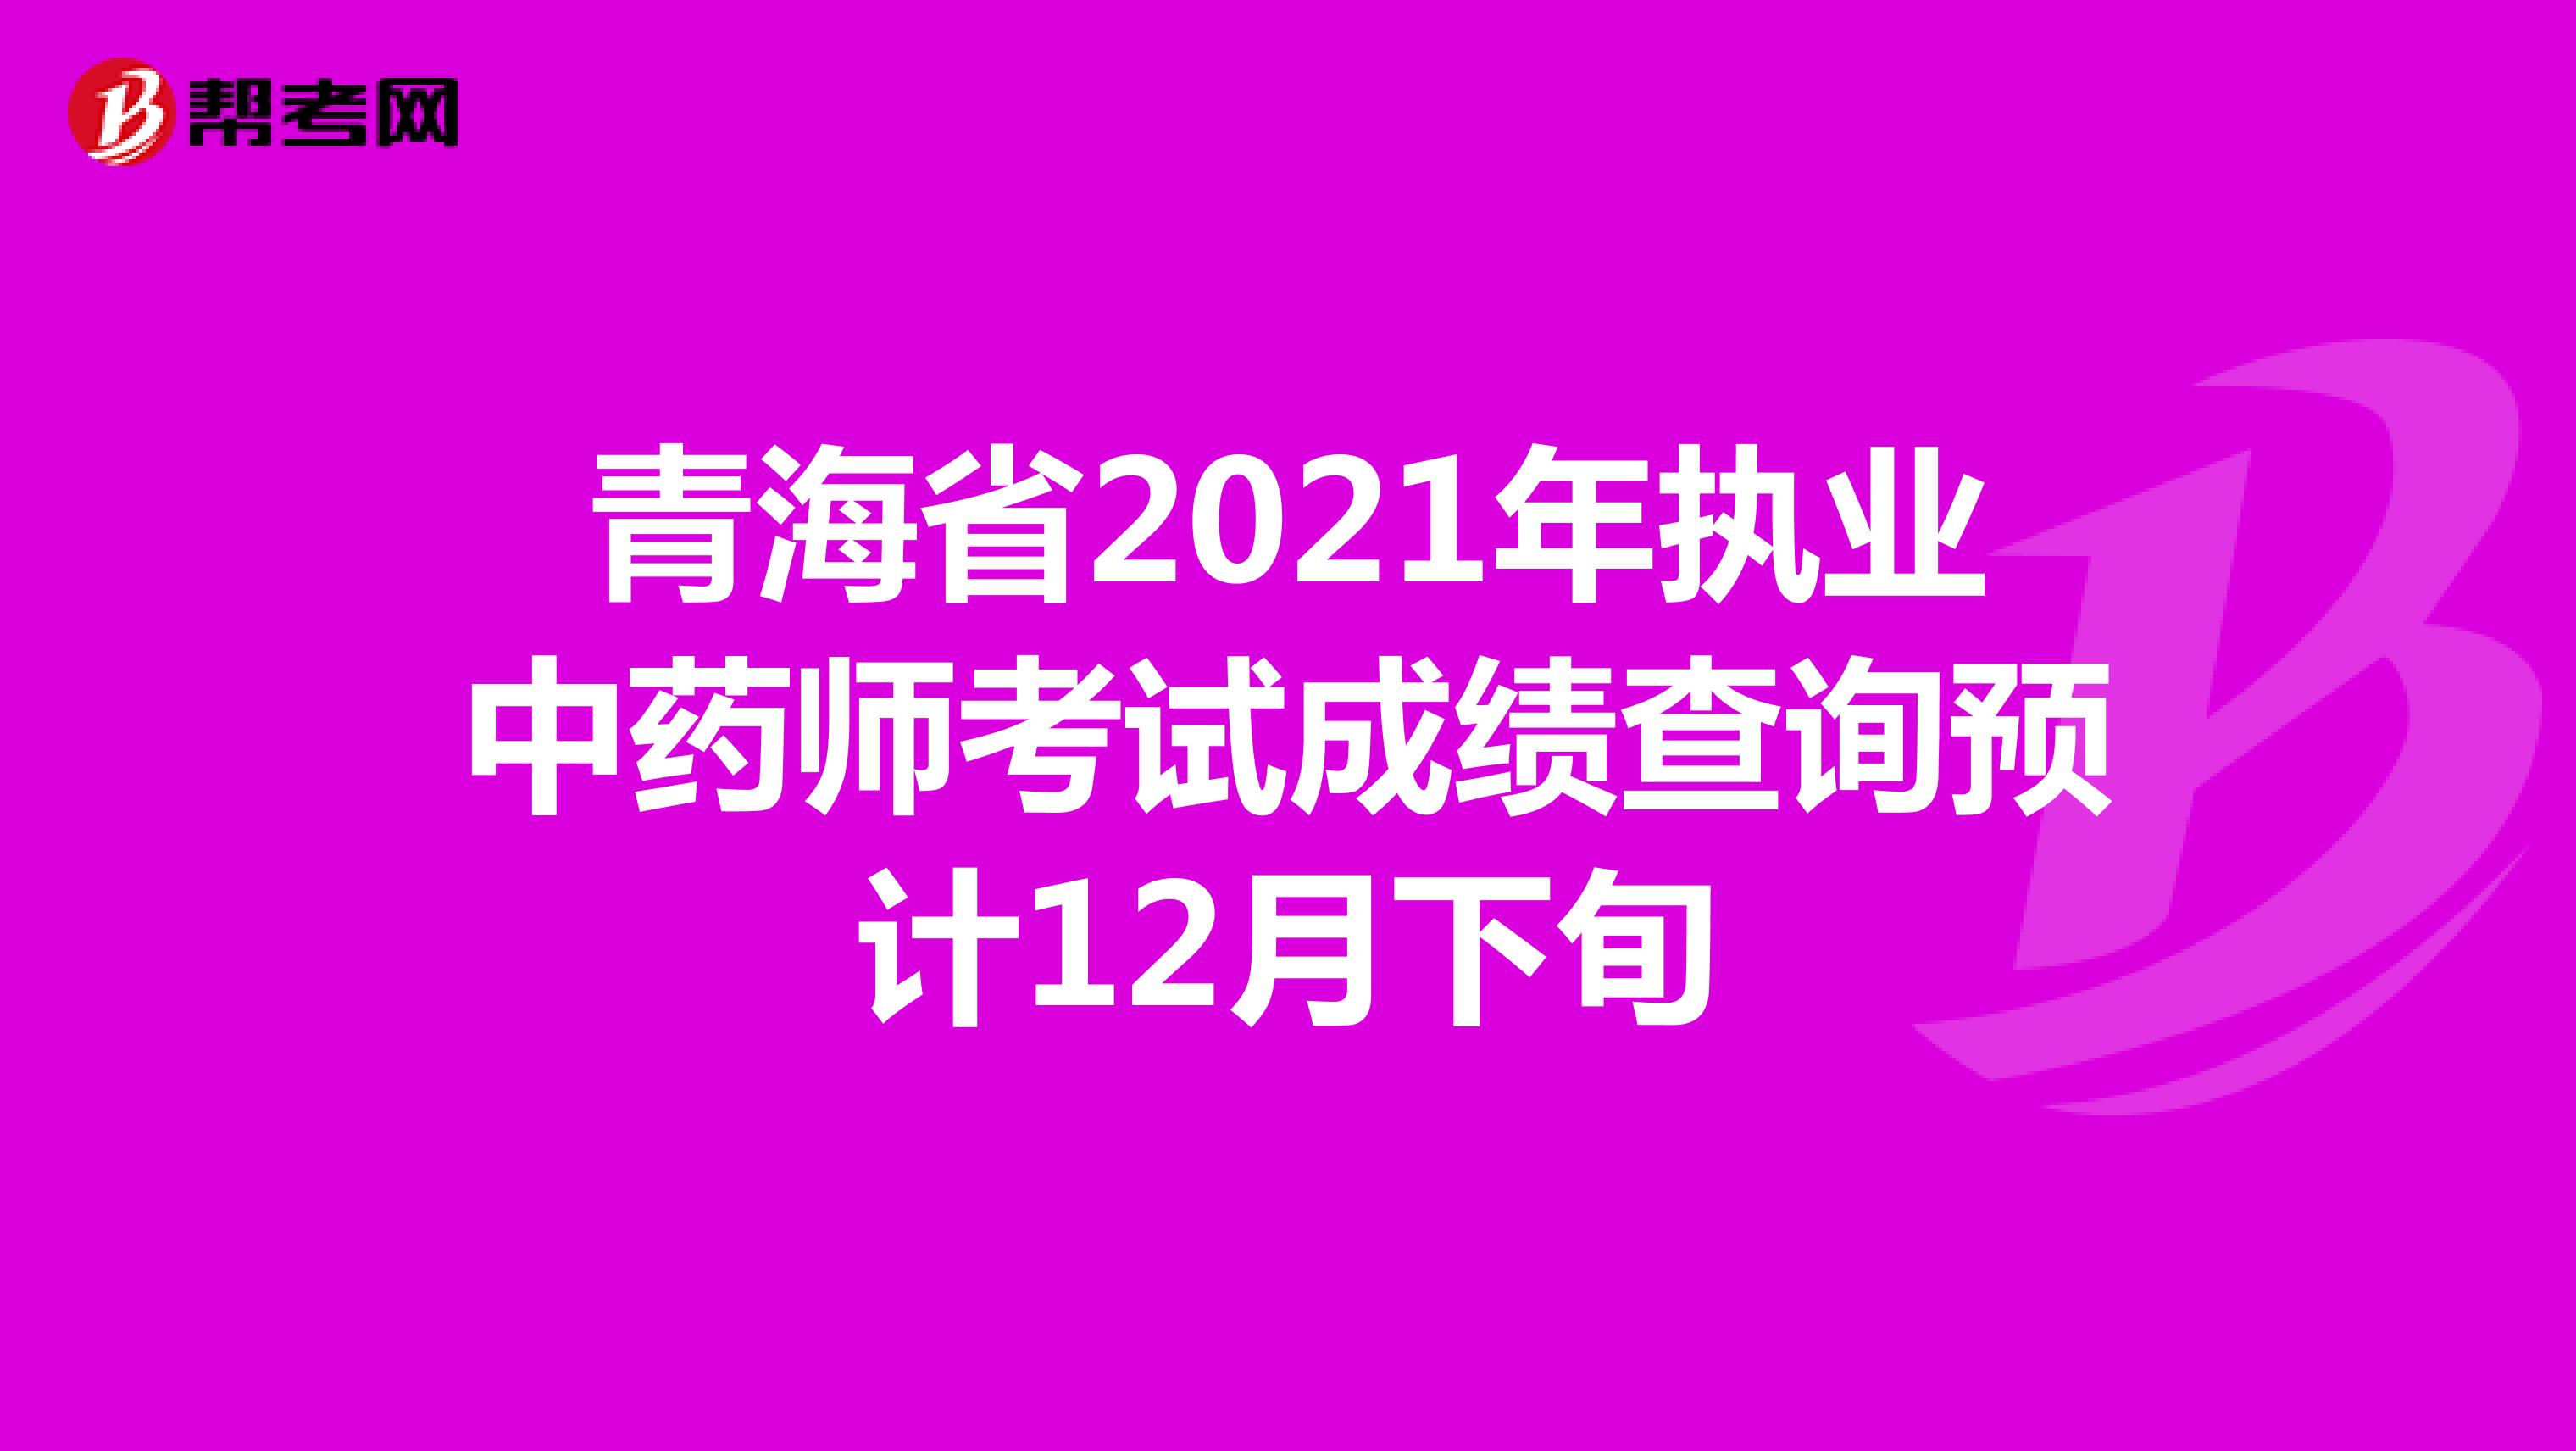 青海省2021年执业中药师考试成绩查询预计12月下旬